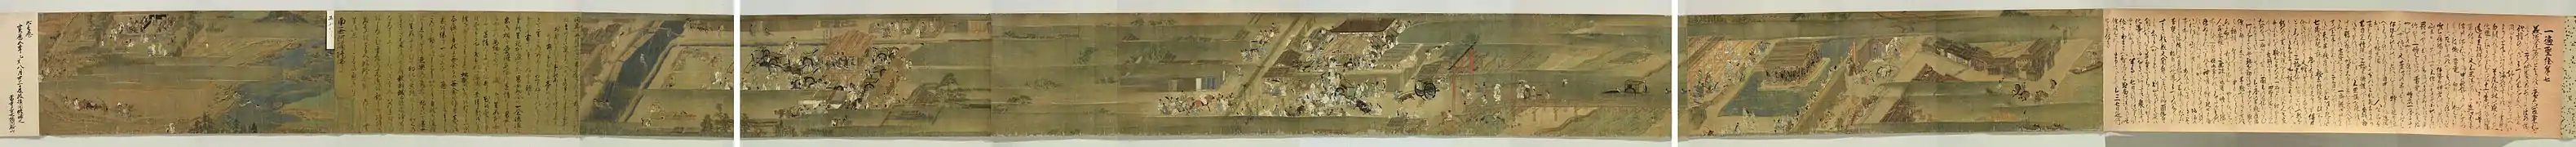 L'exemple d'un rouleau complet d'un emaki, la Biographie illustrée du moine itinérant Ippen (rouleau VII, 1299, musée national de Tokyo). Sens de lecture de droite à gauche. Traditionnellement, le lecteur ne déroule jamais entièrement le rouleau, mais le déroule d’une main tout en le ré-enroulant de l’autre, découvrant ainsi l’histoire au fur et à mesure.